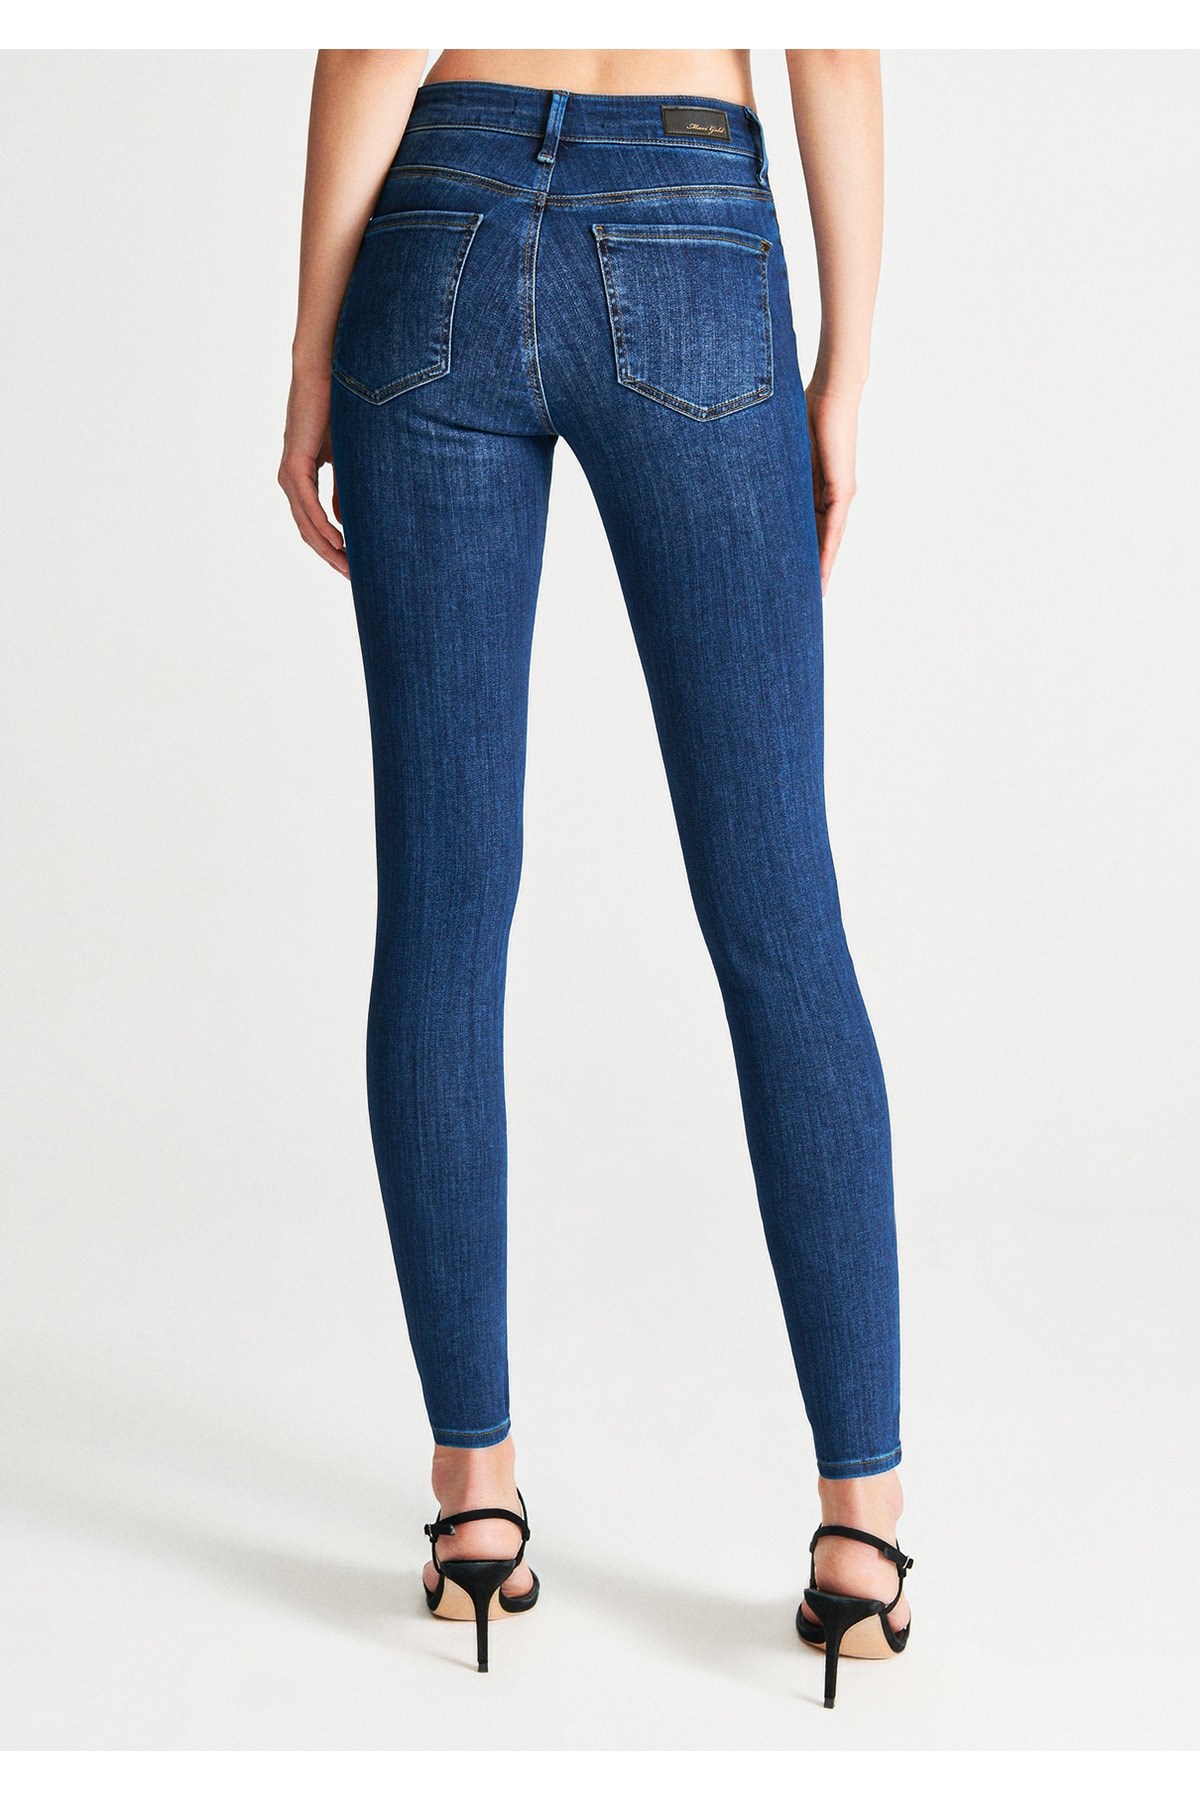 Mavi Jeans Kadın Pantolon 100328-29901 